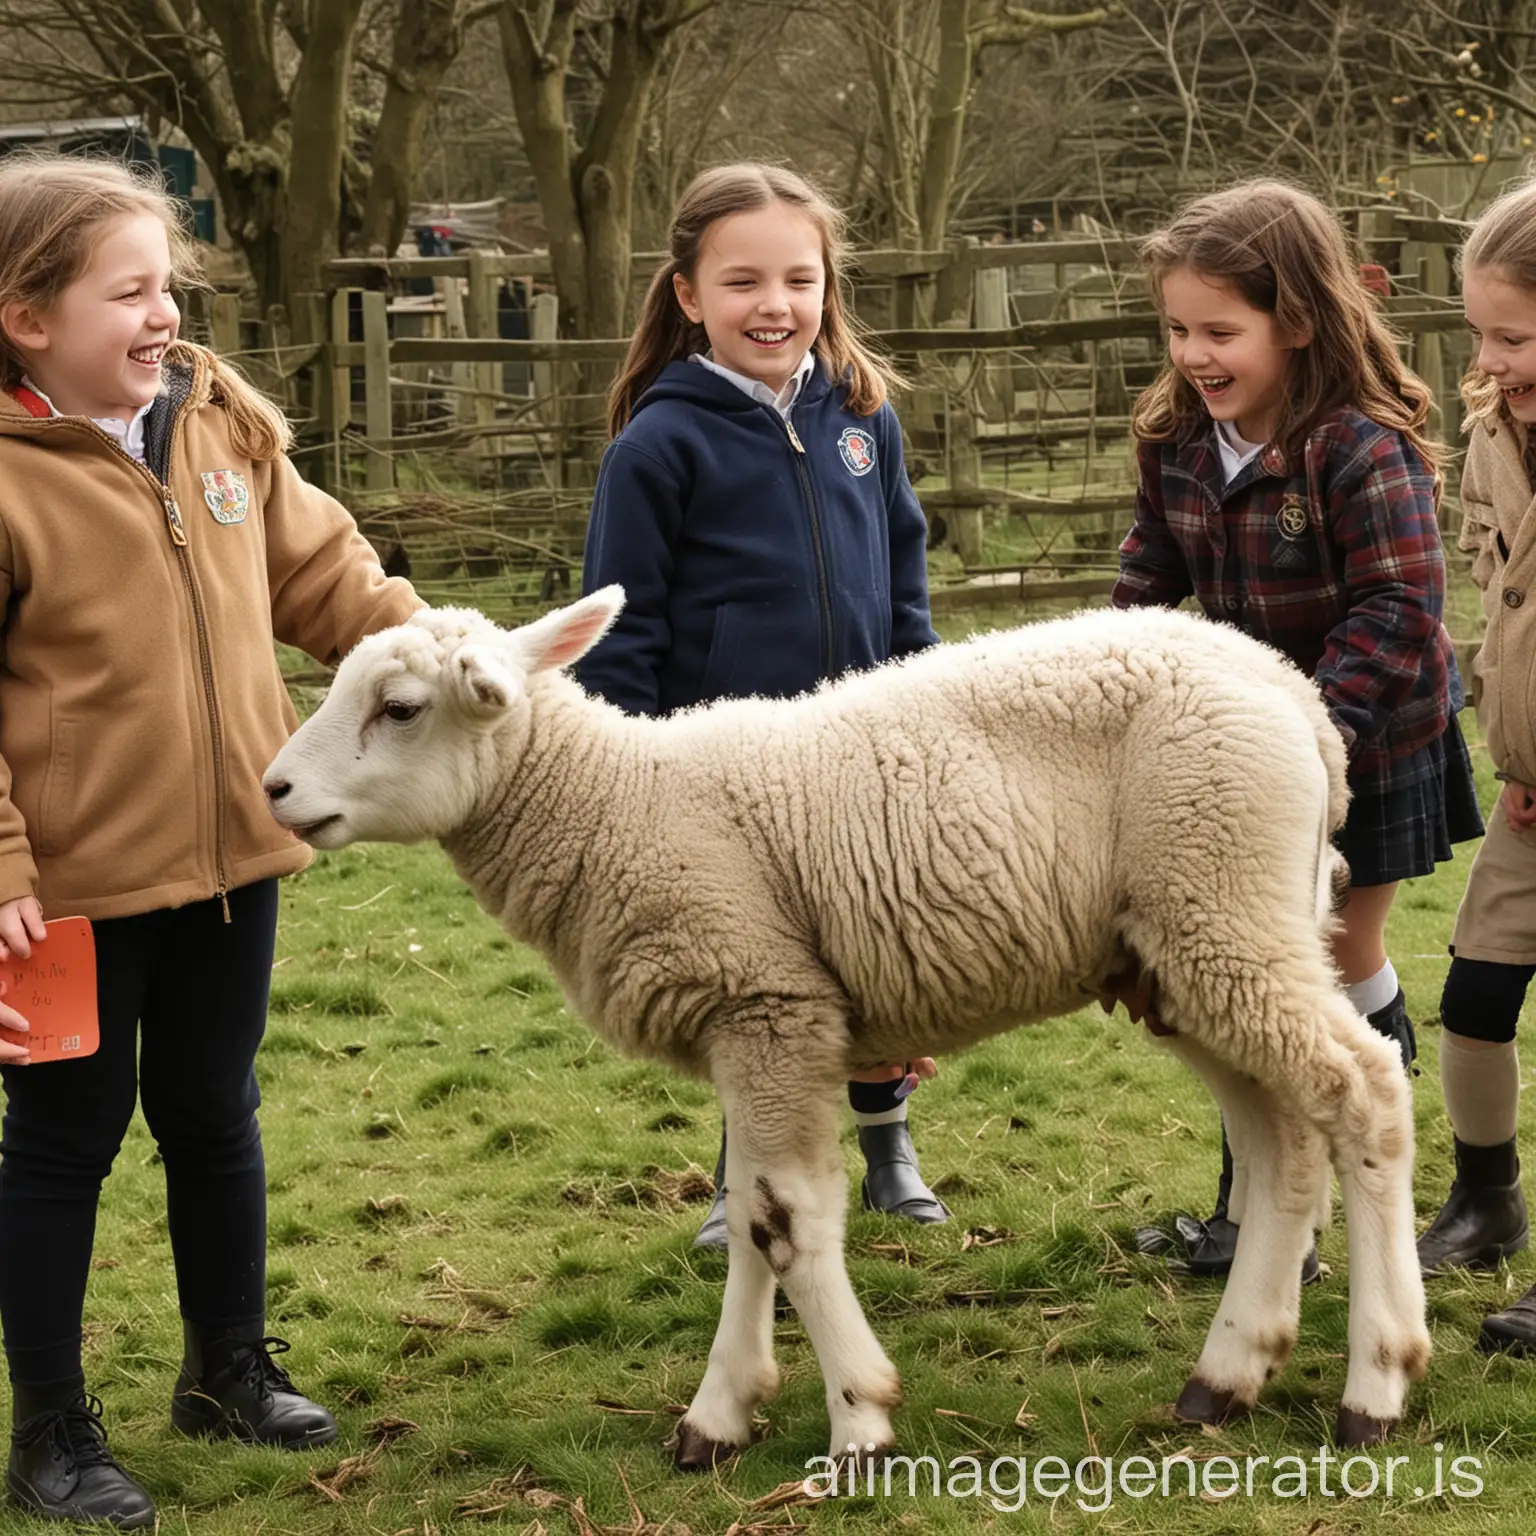 Joyful-School-Children-Watching-a-Lamb-with-Their-Teacher